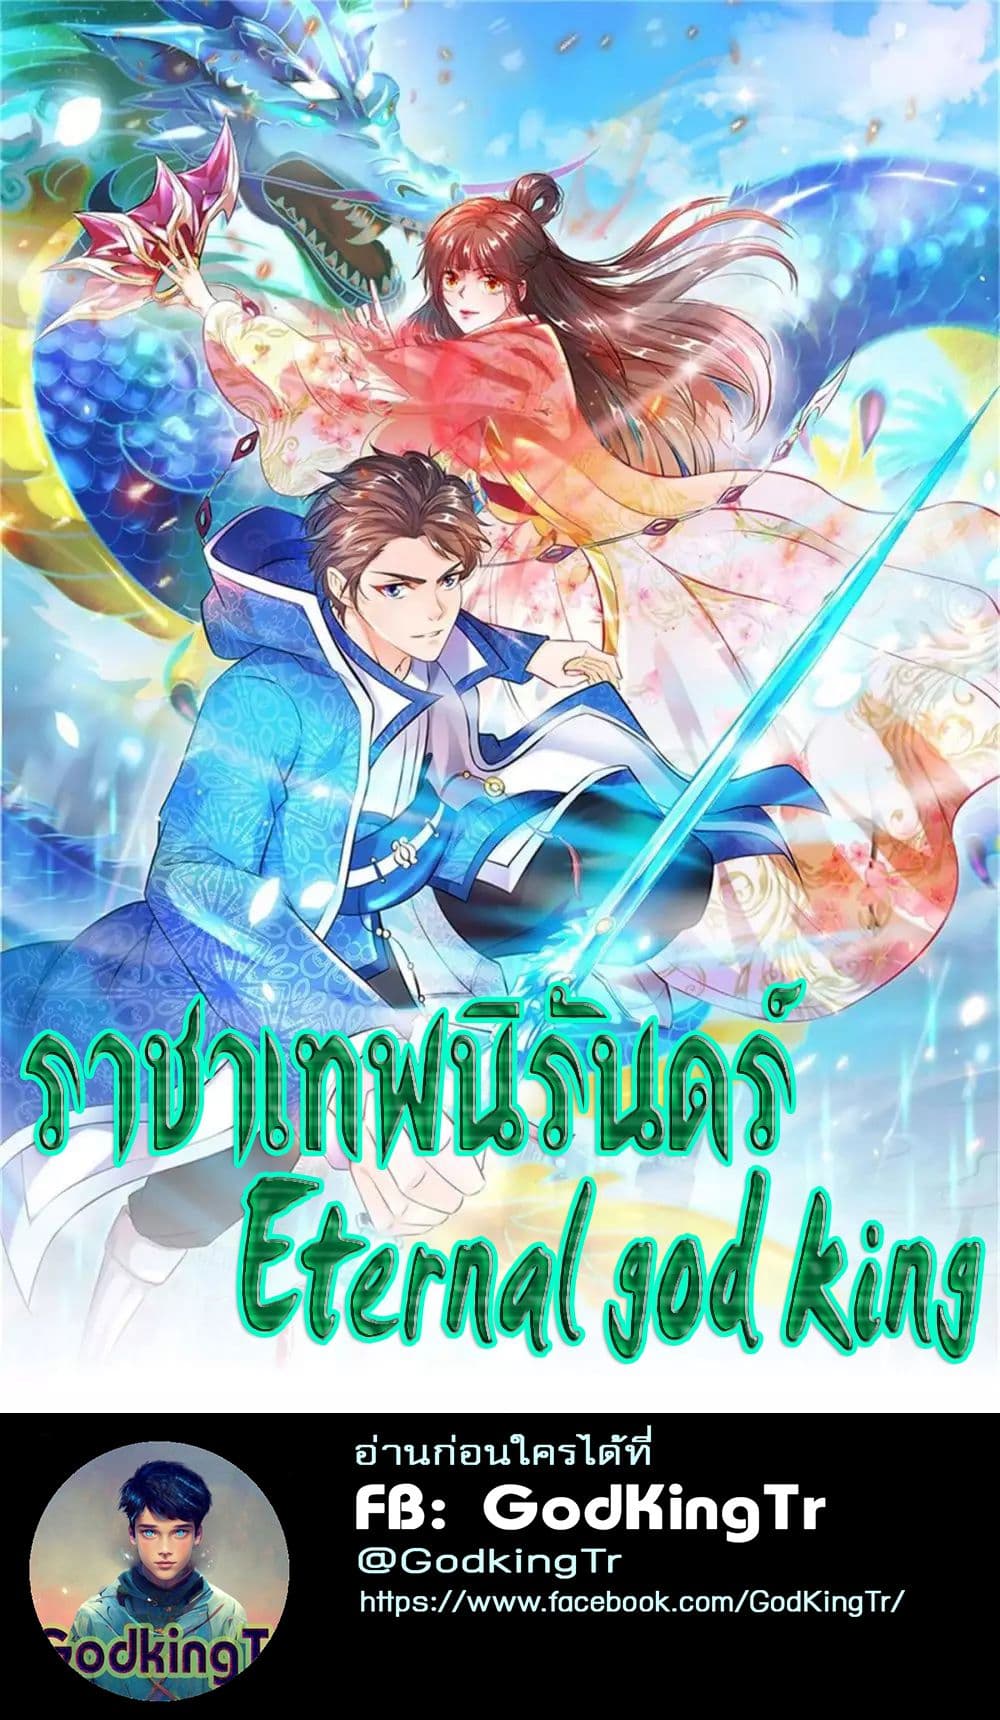 Eternal god King 36 (1)